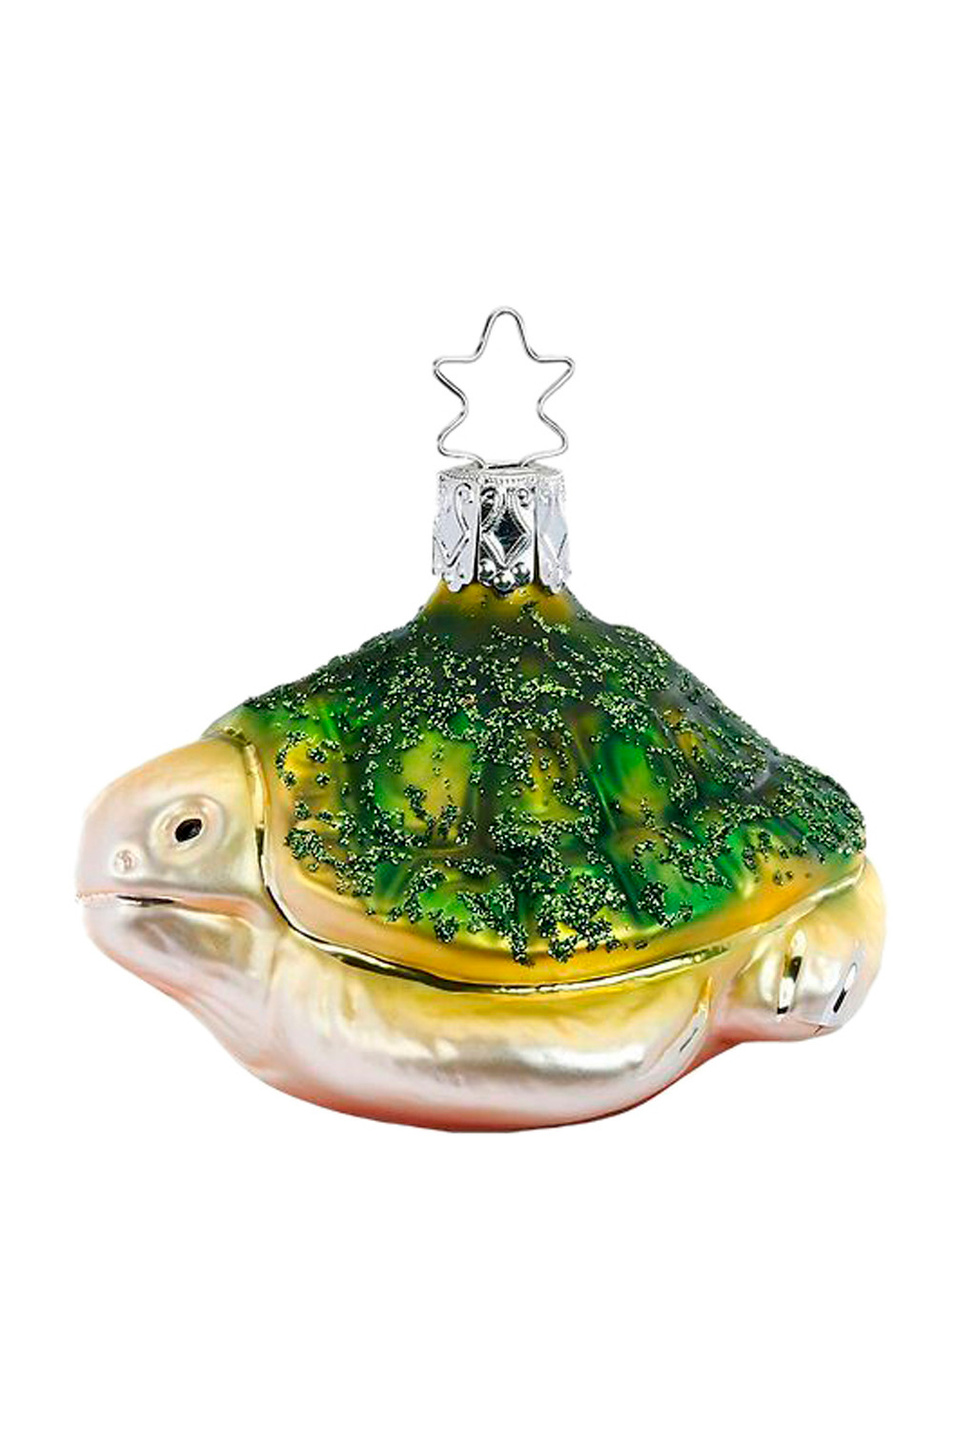 Не имеет пола Inge's Christmas Елочная игрушка "Морская черепаха", 6 см (цвет ), артикул 10040S020 | Фото 1